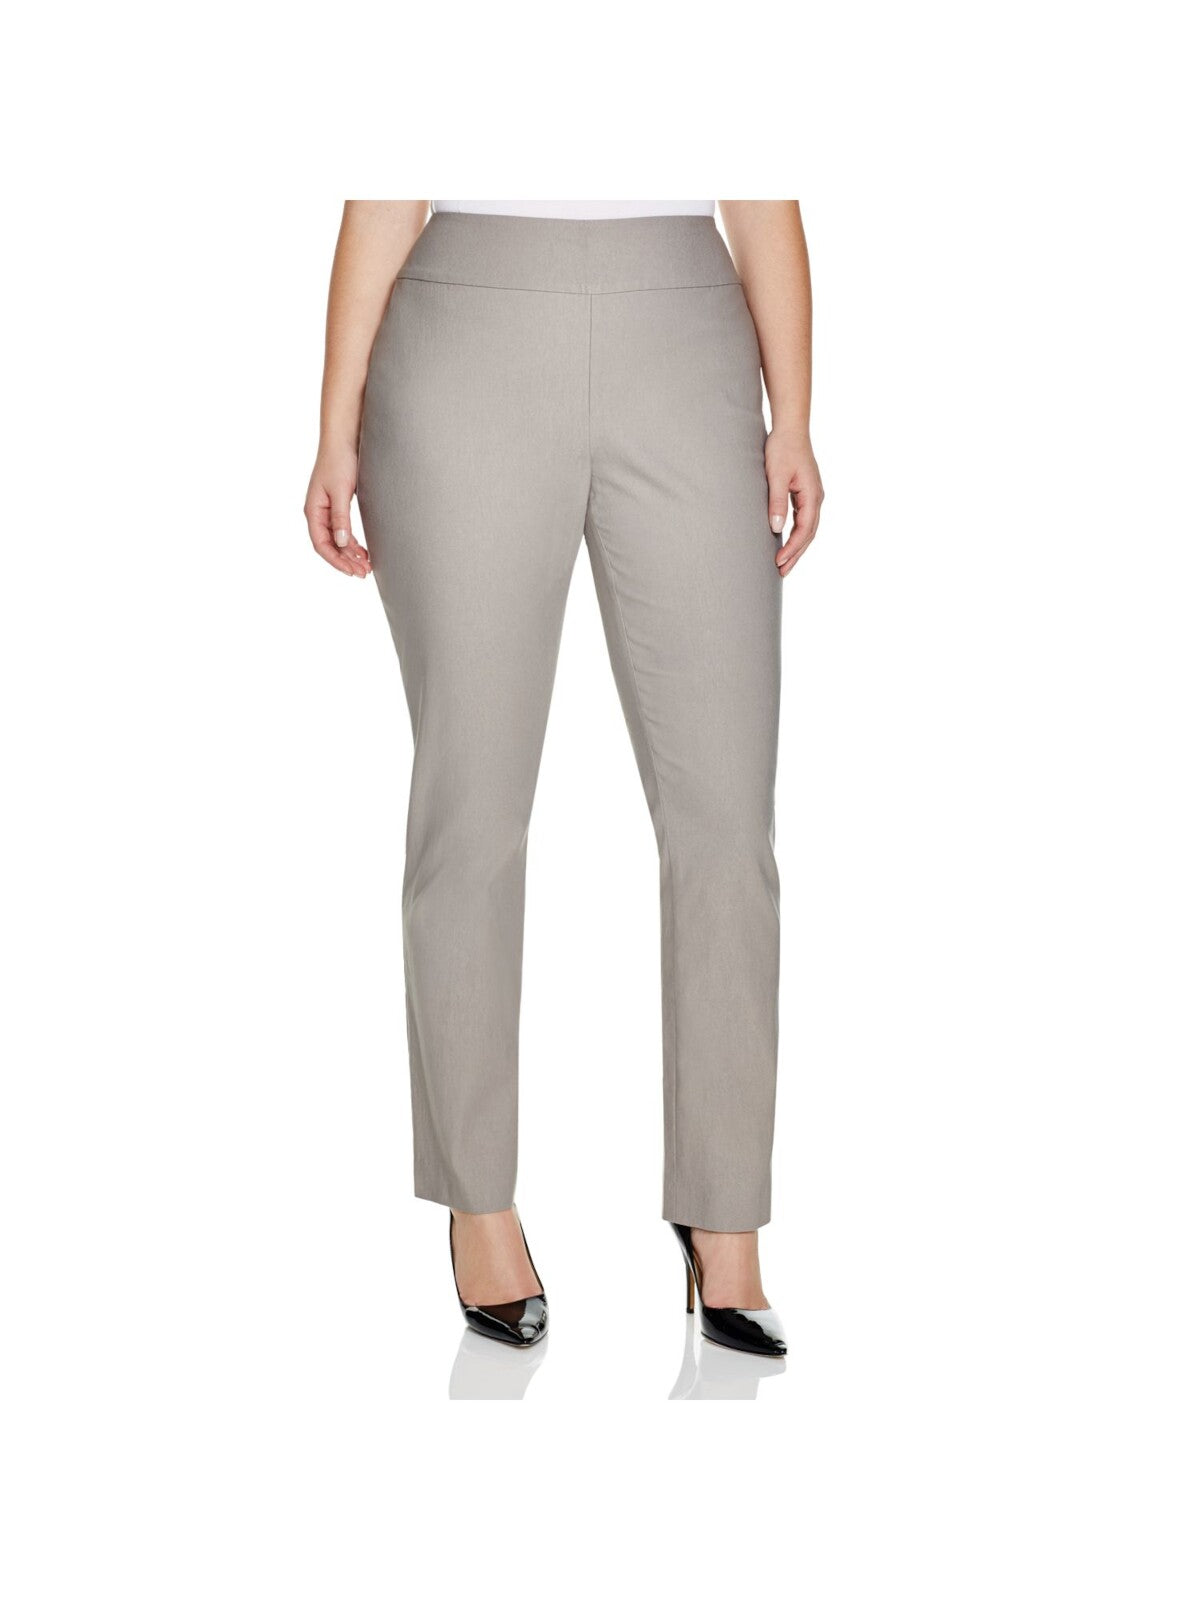 NIC+ZOE Womens Gray Stretch Wear To Work High Waist Pants Plus 24W